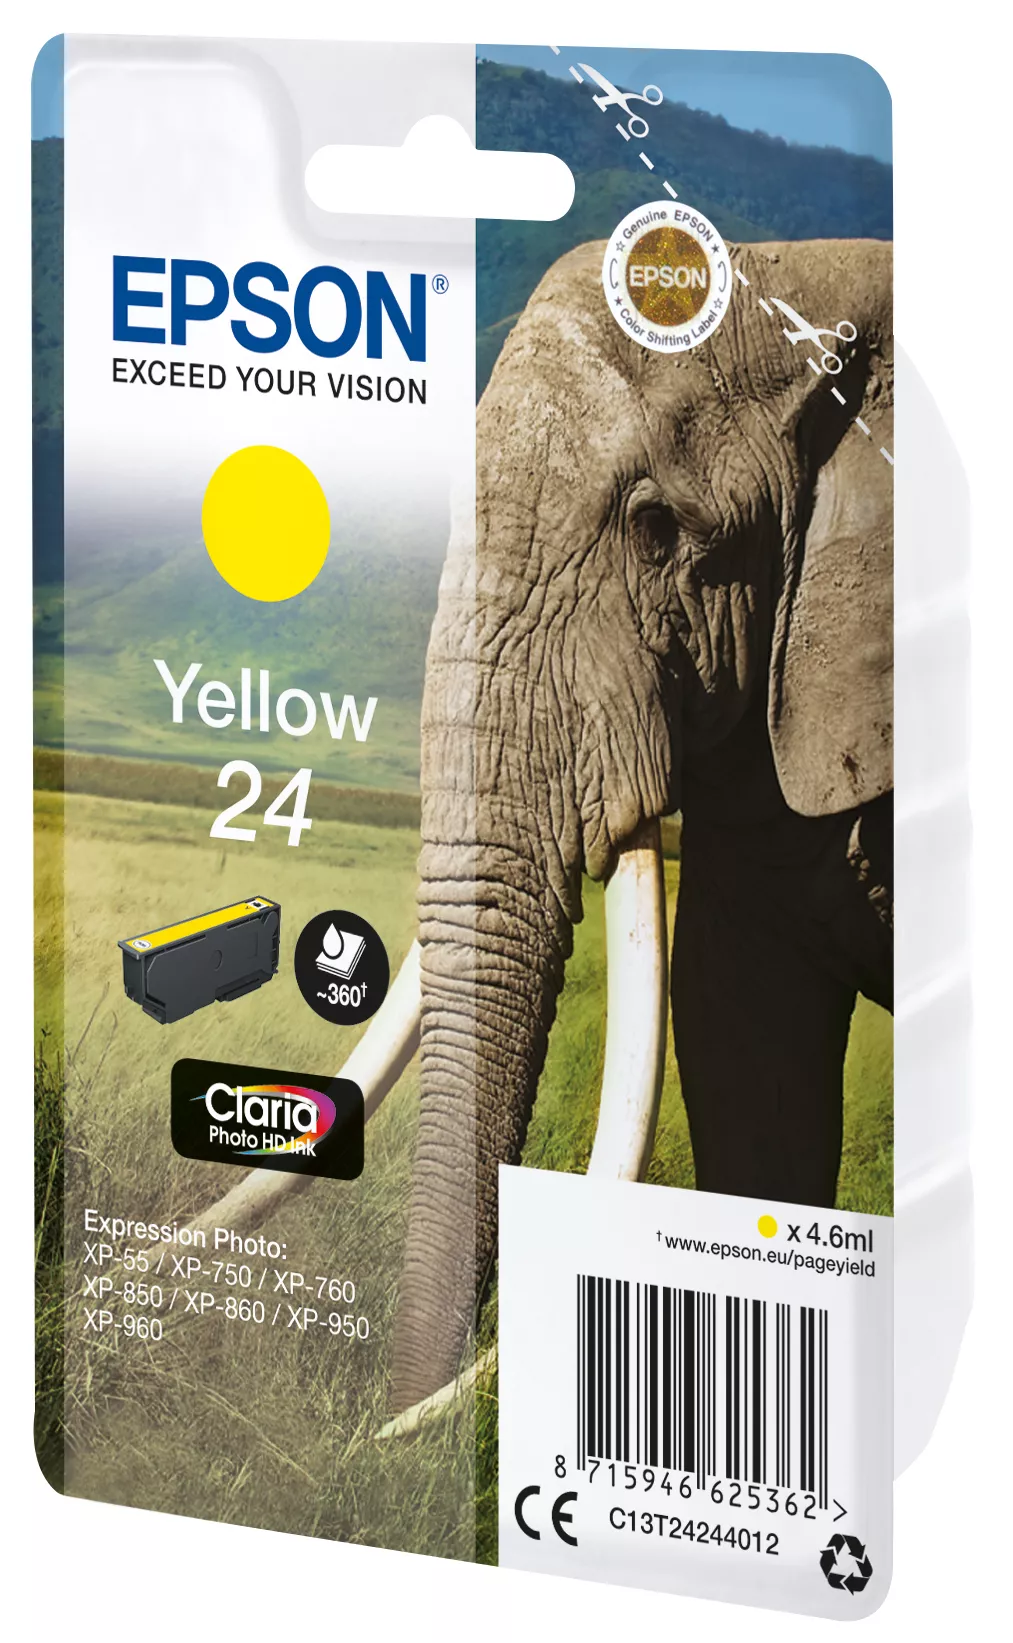 Vente EPSON 24 cartouche encre jaune capacité standard 4.6ml Epson au meilleur prix - visuel 2